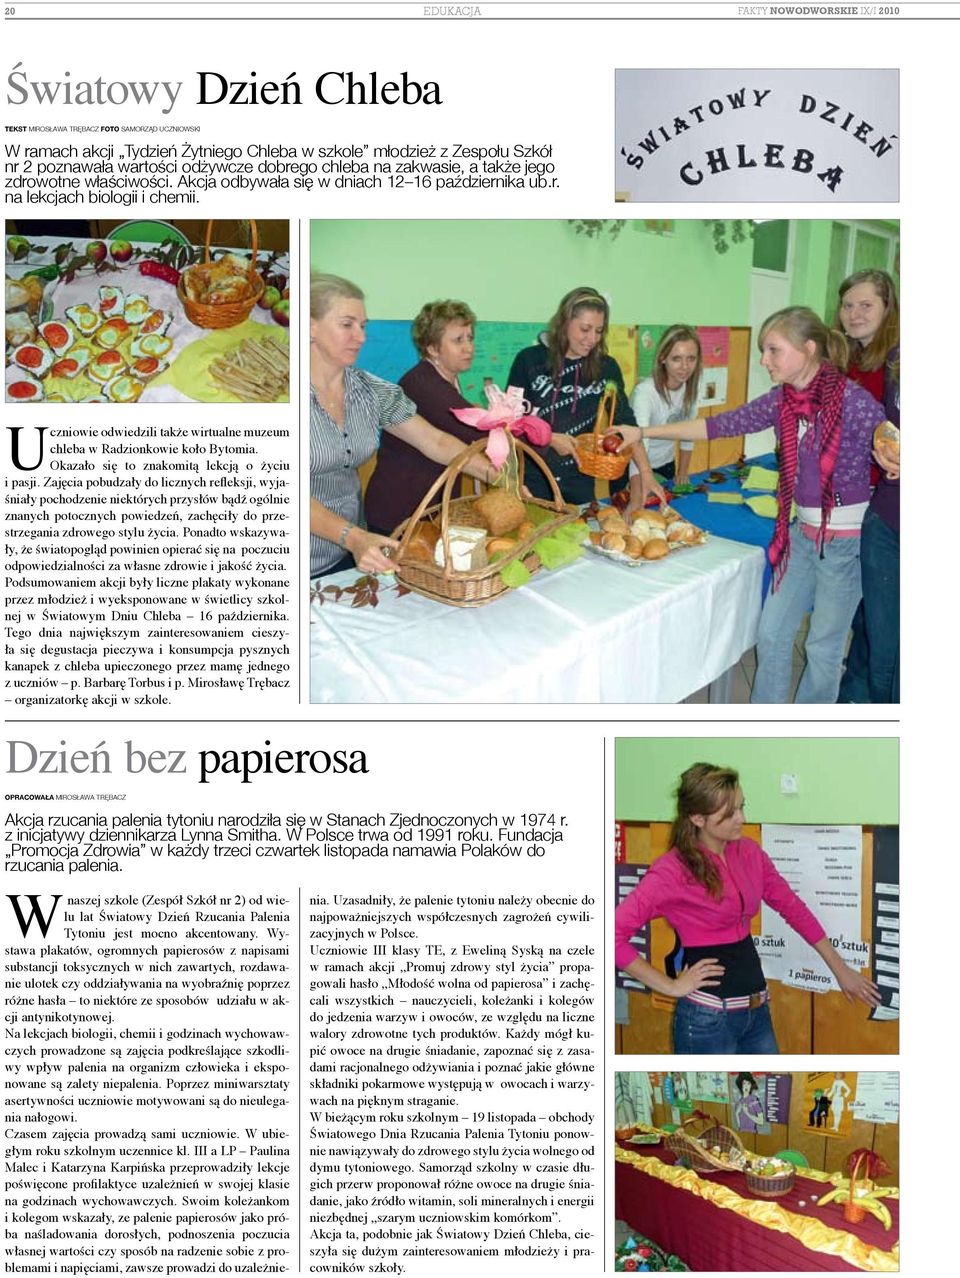 Uczniowie odwiedzili także wirtualne muzeum chleba w Radzionkowie koło Bytomia. Okazało się to znakomitą lekcją o życiu i pasji.